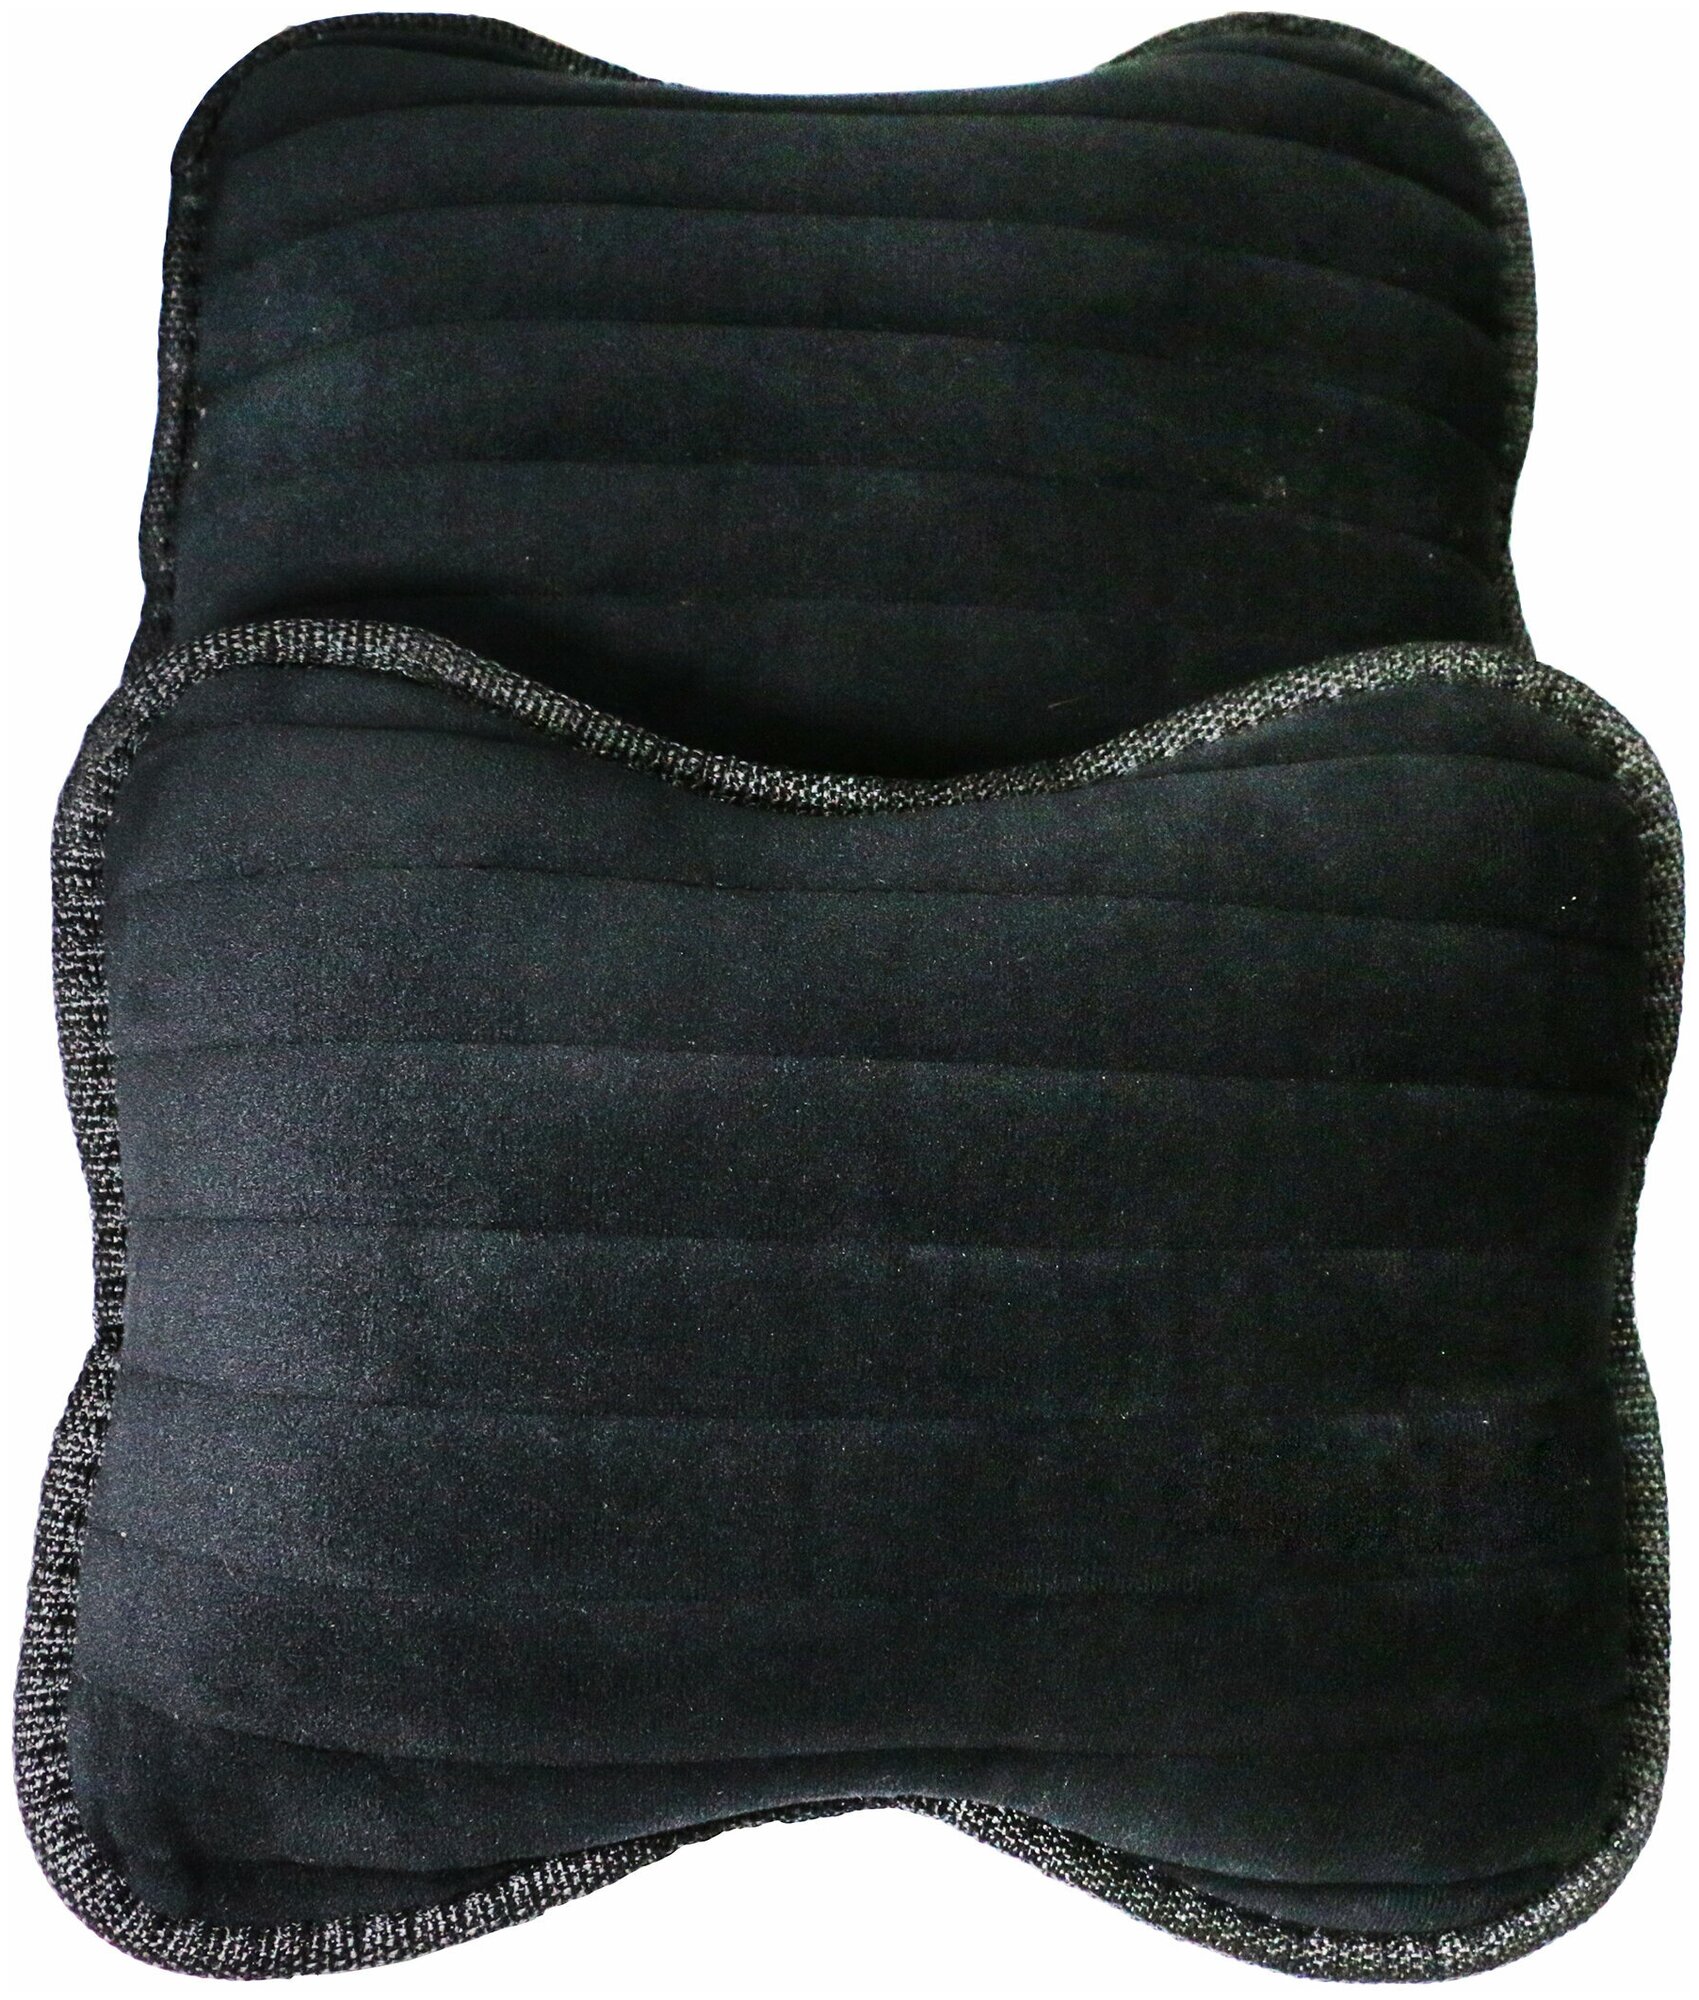 Подушка-подголовник на сиденье автомобиля универсальная из велюра премиум-класса. Ткань полоса чёрный/Тачкин гардероб - 2 шт.